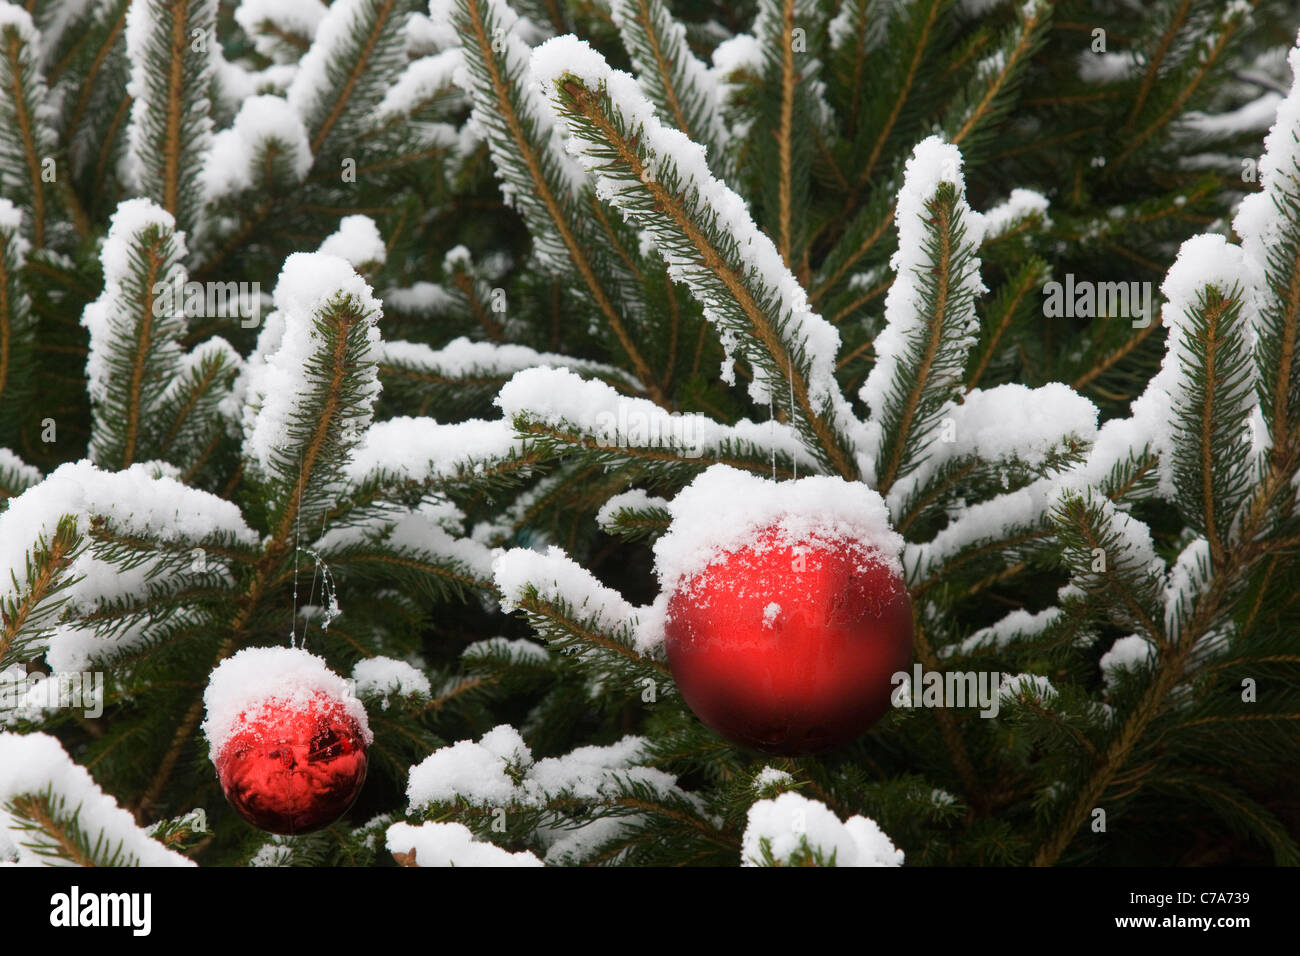 Auténtico árbol de Navidad con bolas rojas y nieve real Foto de stock